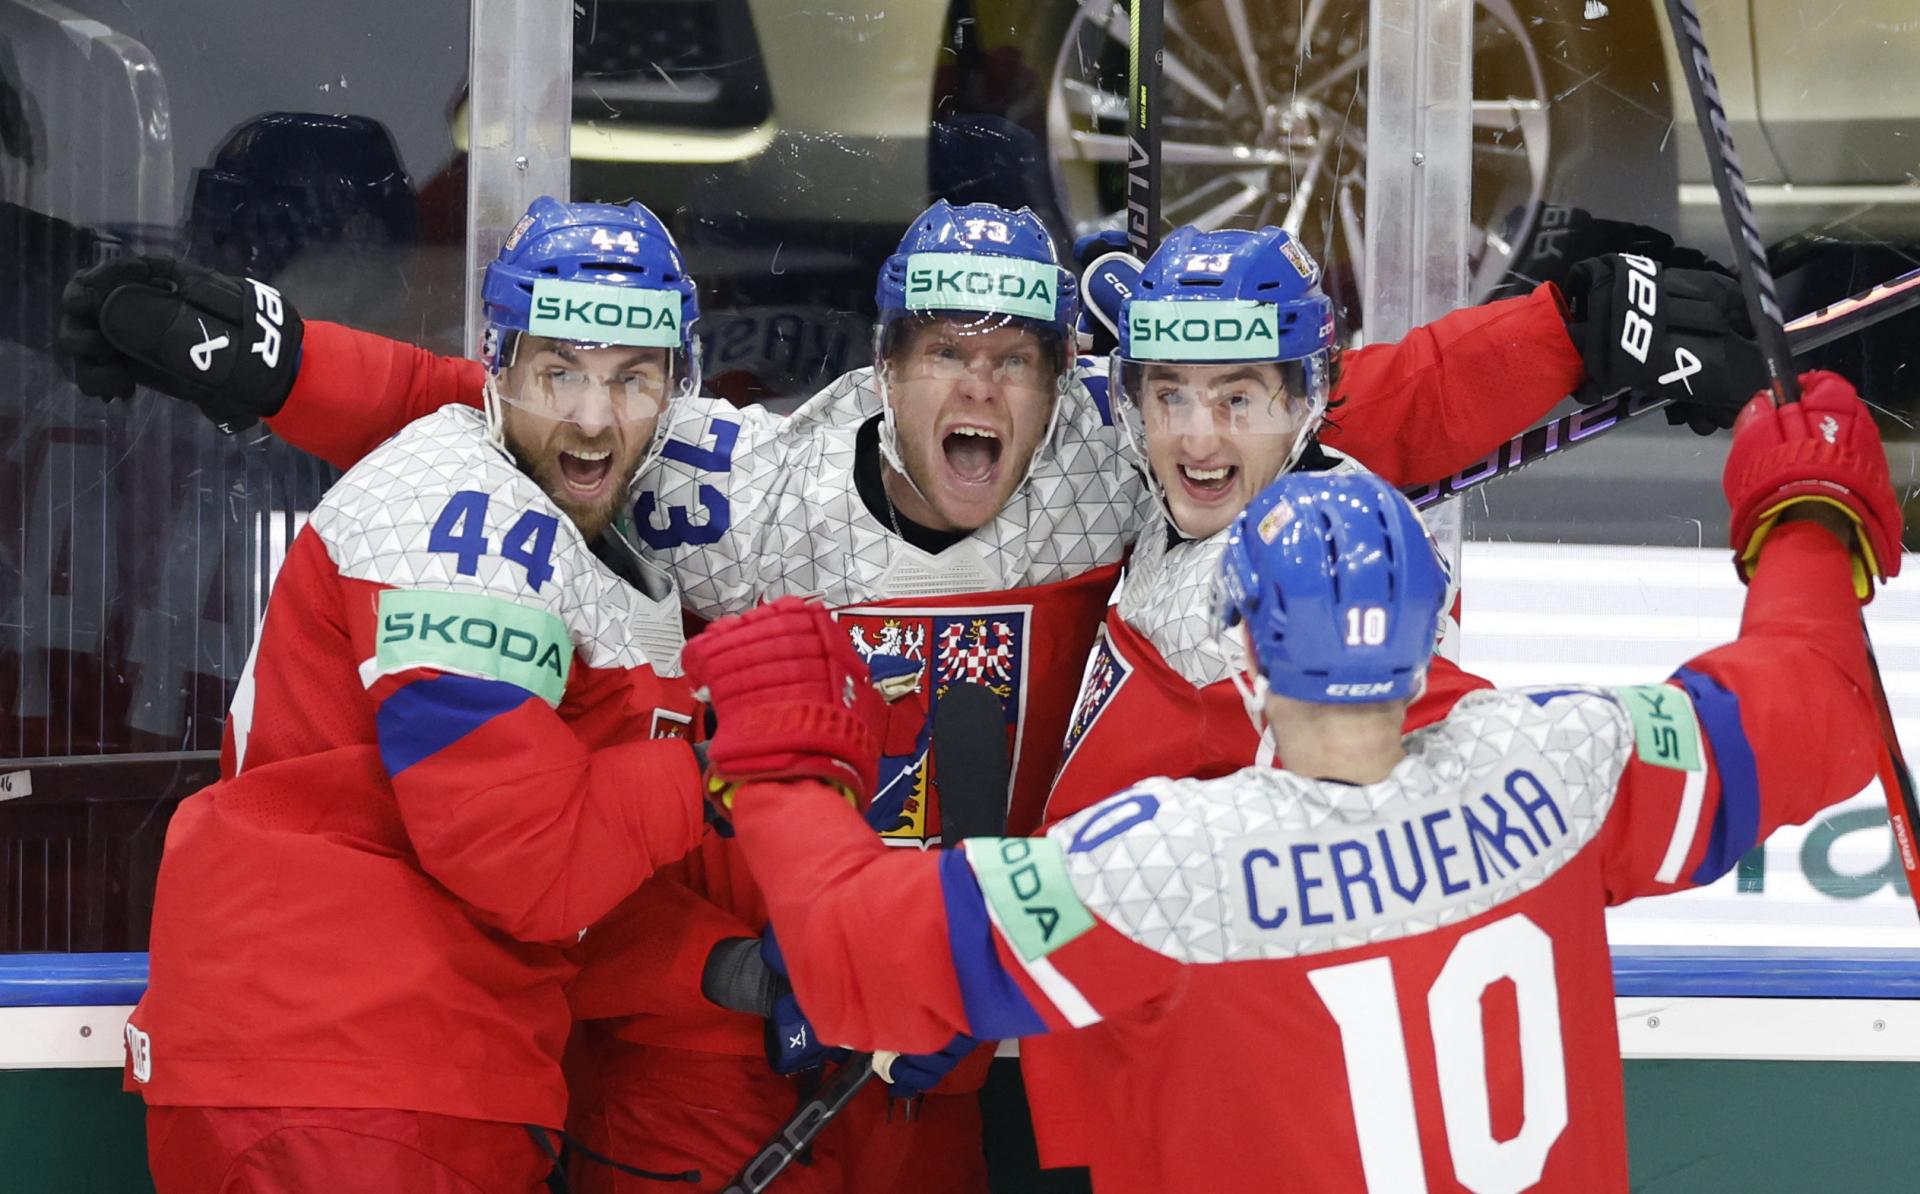 MS v hokeji: Česi si po 14 rokoch zahrajú o zlato, v semifinále zdolali Švédov